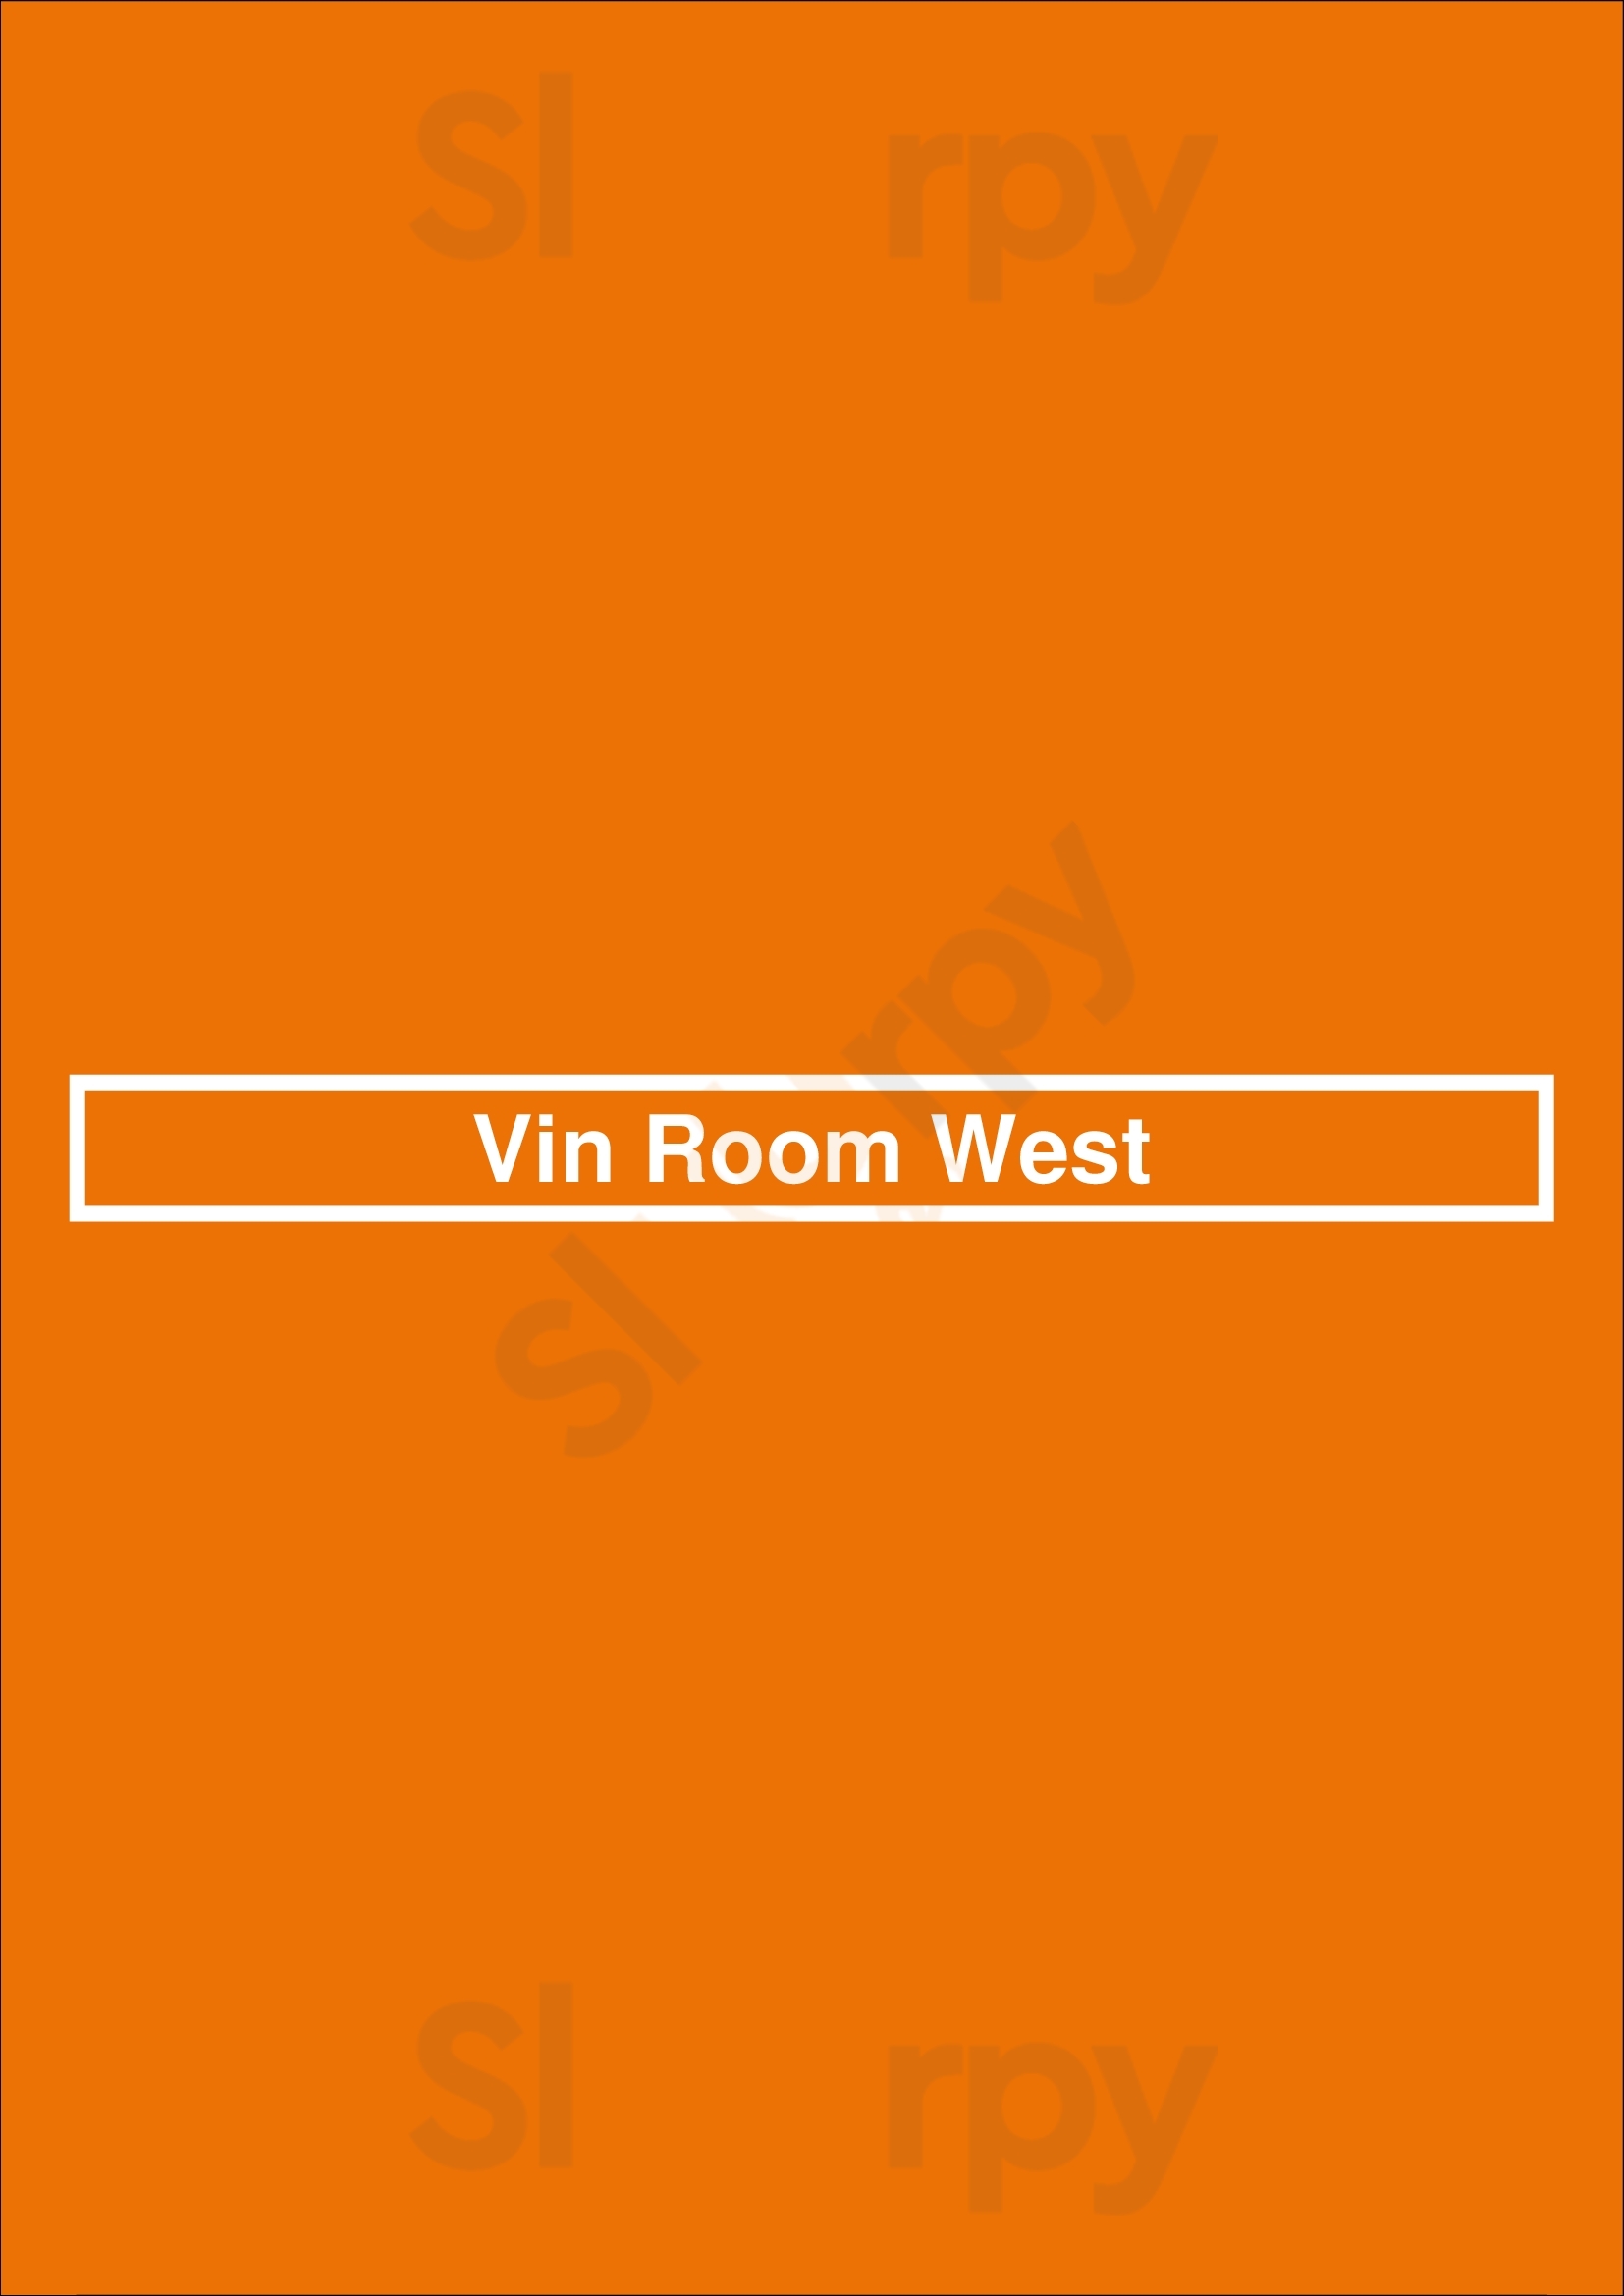 Vin Room West Calgary Menu - 1